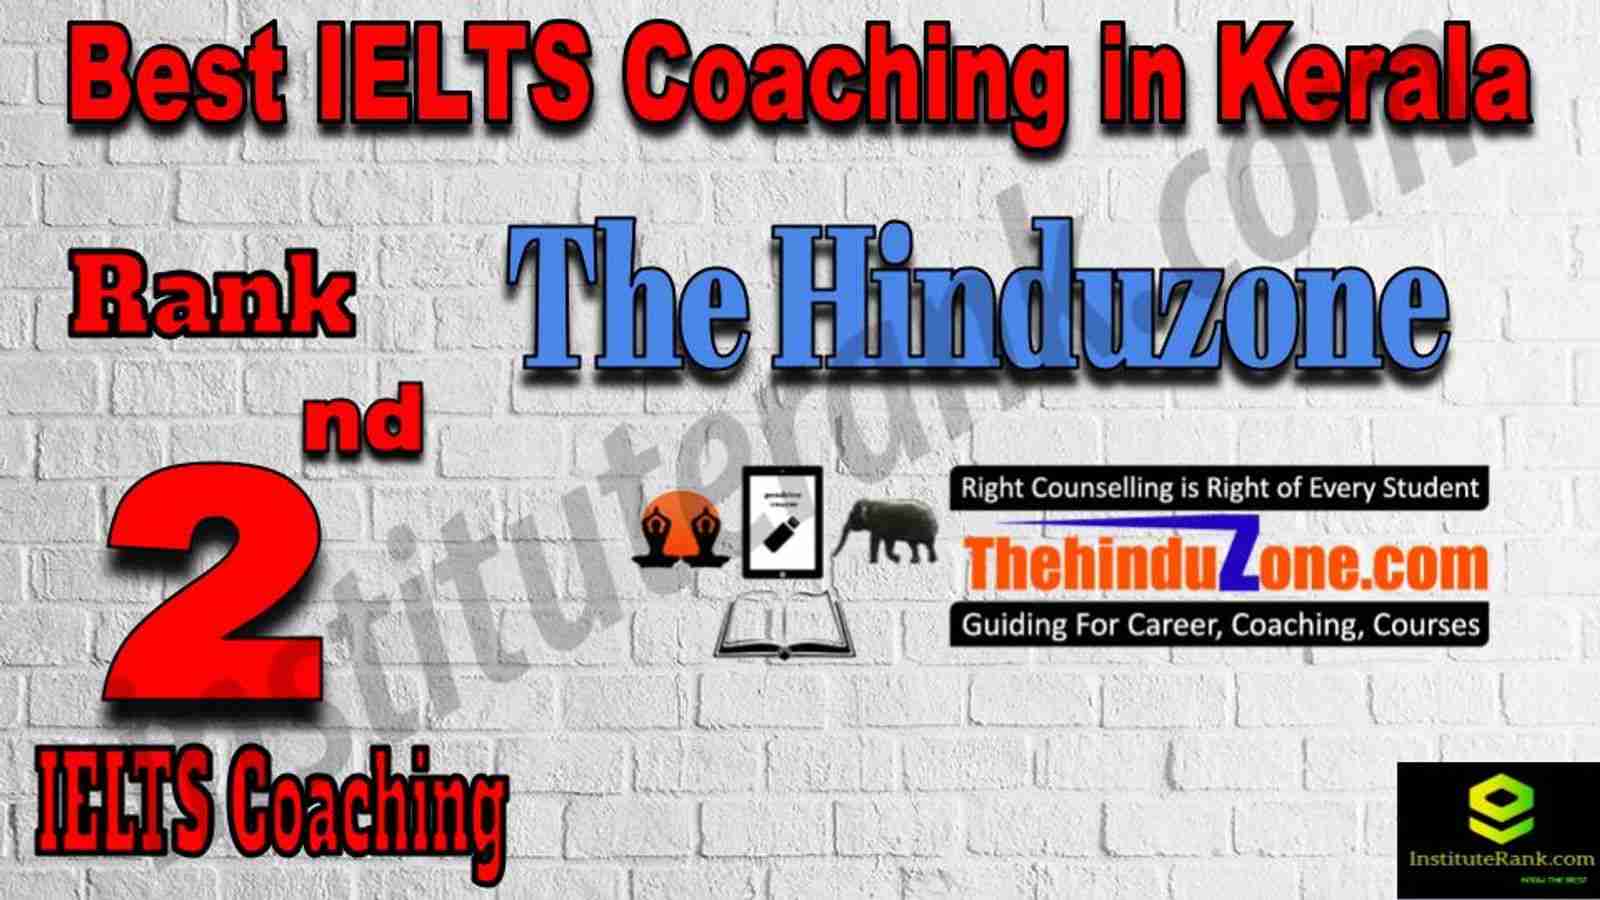 2nd Best IELTS Coaching in Kerala